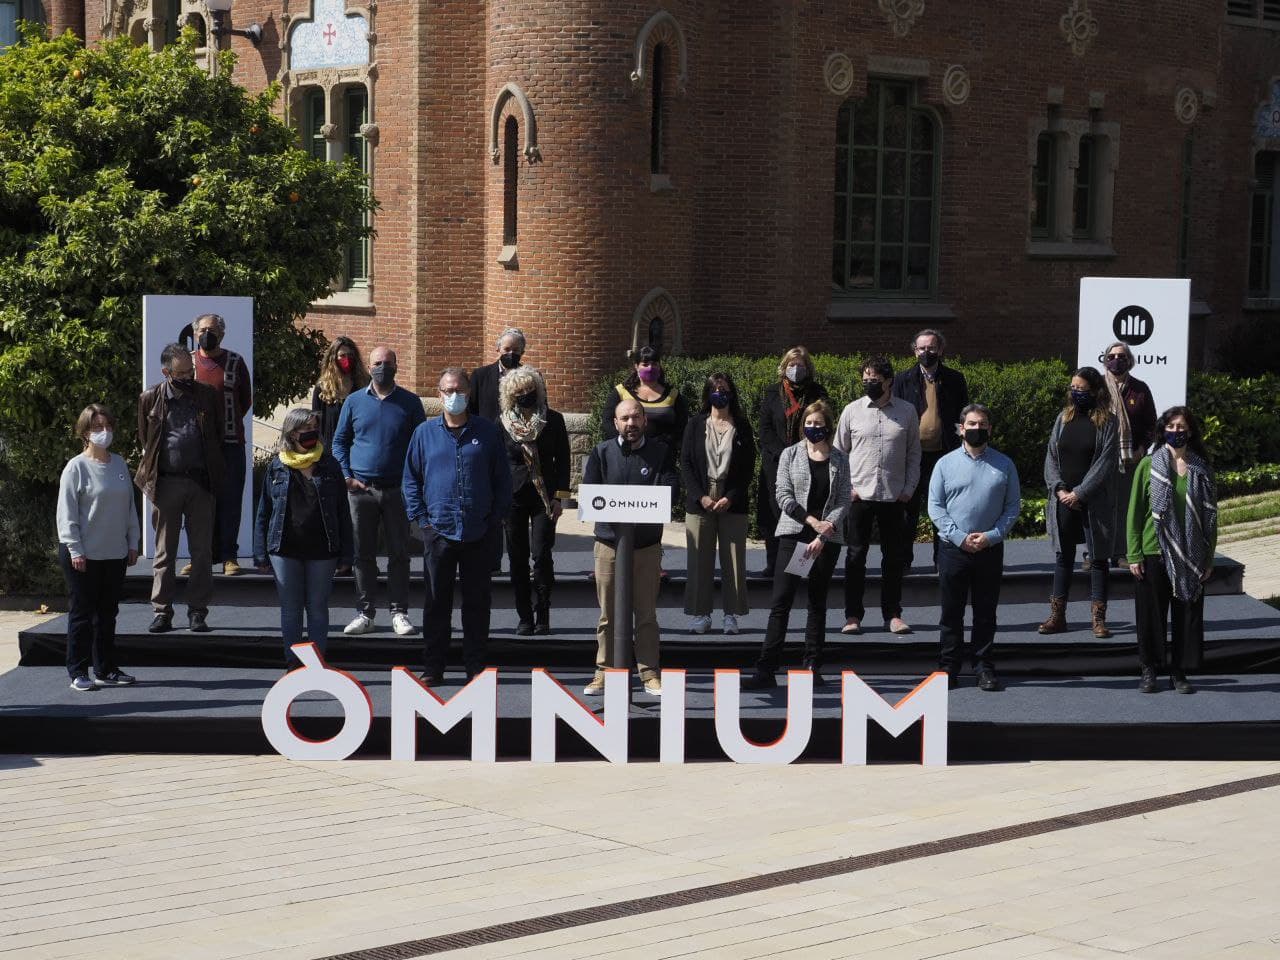 Òmnium pide al independentismo "un frente común para salir del callejón sin salida"